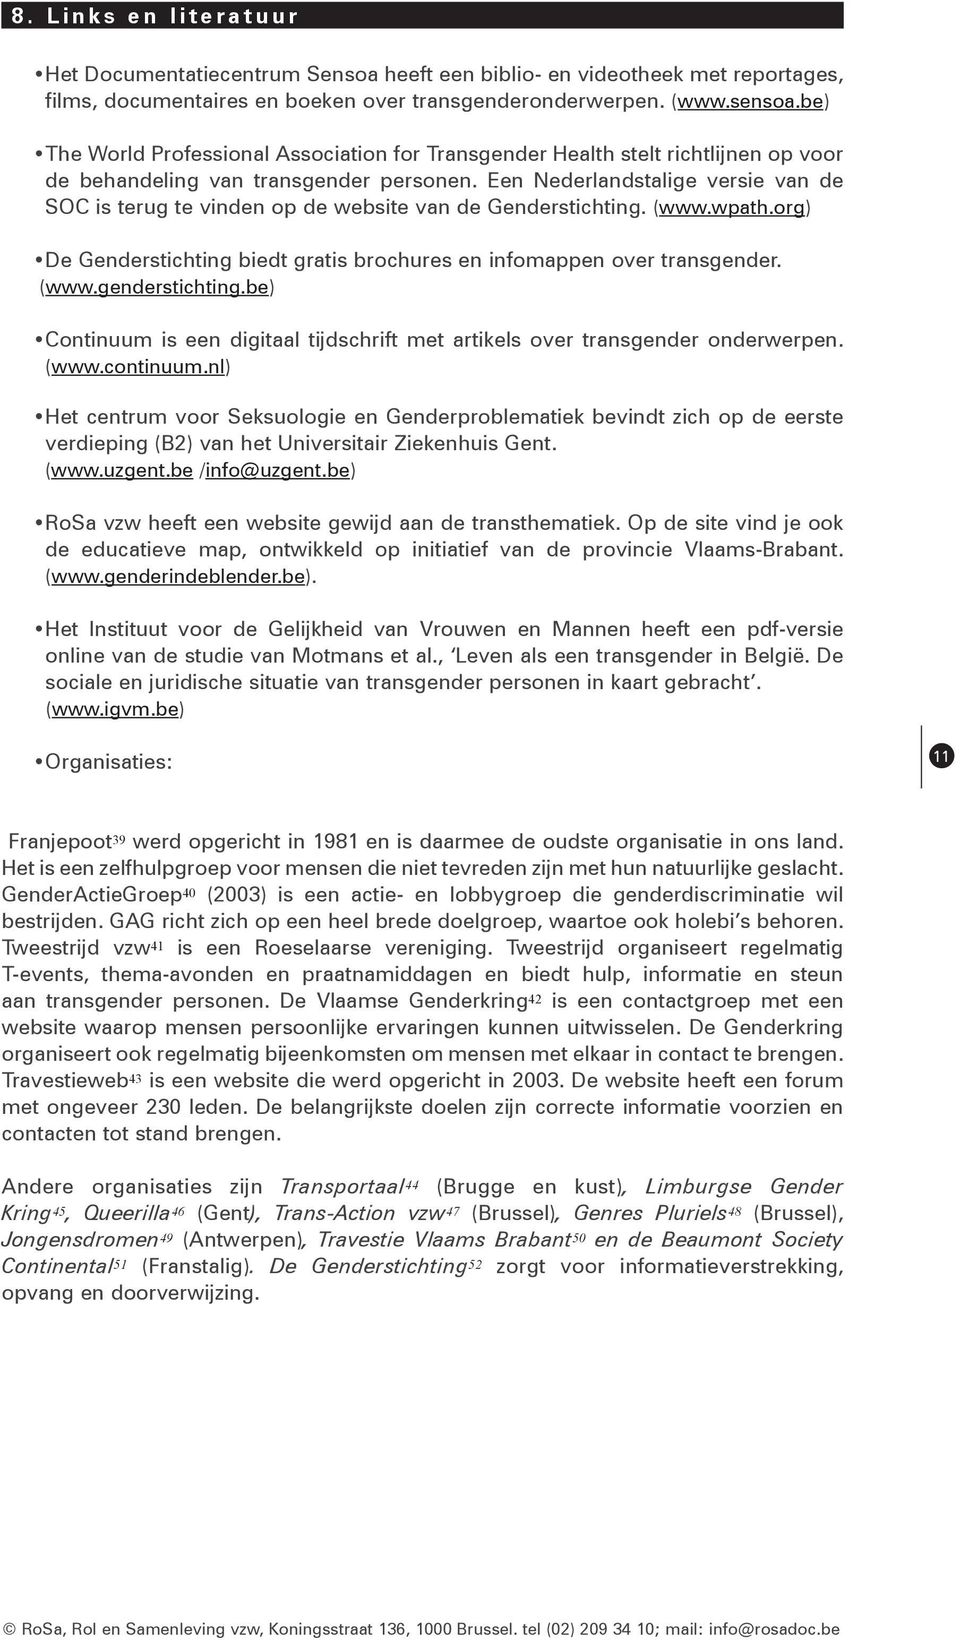 Een Nederlandstalige versie van de SOC is terug te vinden op de website van de Genderstichting. (www.wpath.org) De Genderstichting biedt gratis brochures en infomappen over transgender. (www.genderstichting.